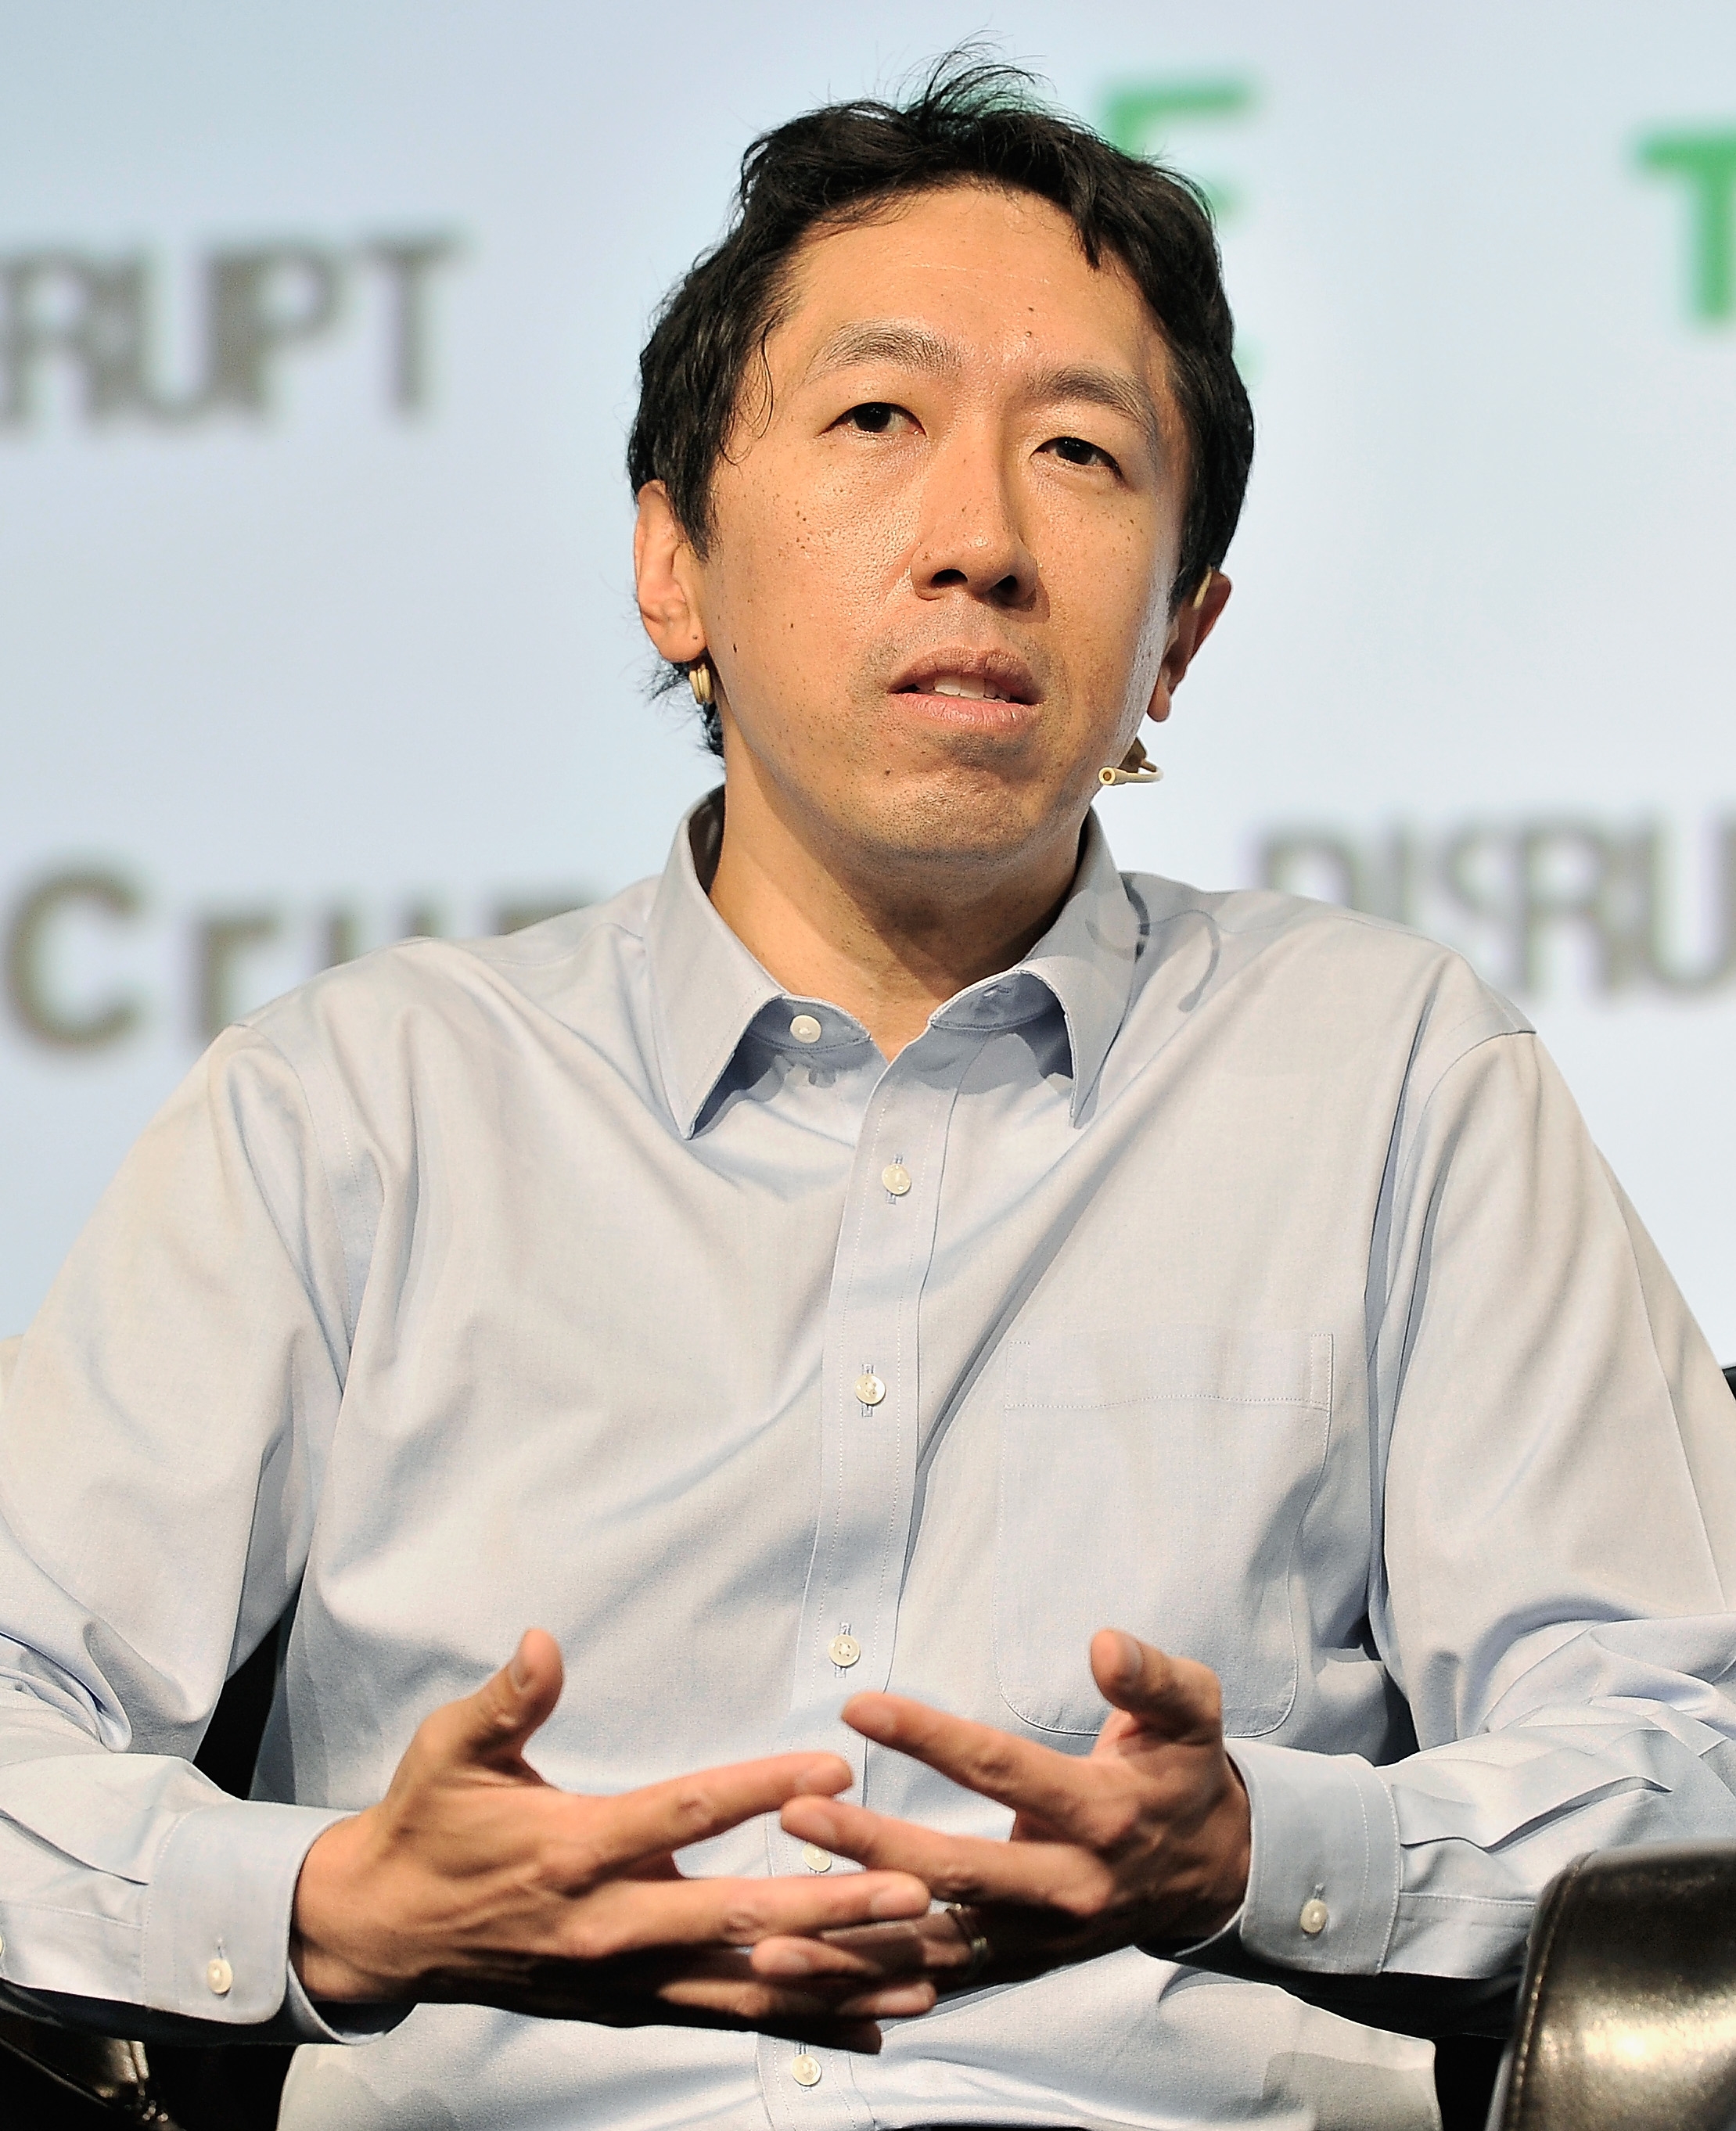 auteur Andrew Ng de la citation Si nous pouvons rendre les ordinateurs plus intelligents - et que je veux faire attention au battage médiatique de l'IA - et comprendre mieux le monde et l'environnement, cela peut rendre la vie tellement meilleure pour beaucoup d'entre nous. Tout comme la révolution industrielle a libéré beaucoup d'humanité de la corvée physique, je pense que l'IA a le potentiel de libérer l'humanité d'une grande partie de la corvée mentale.